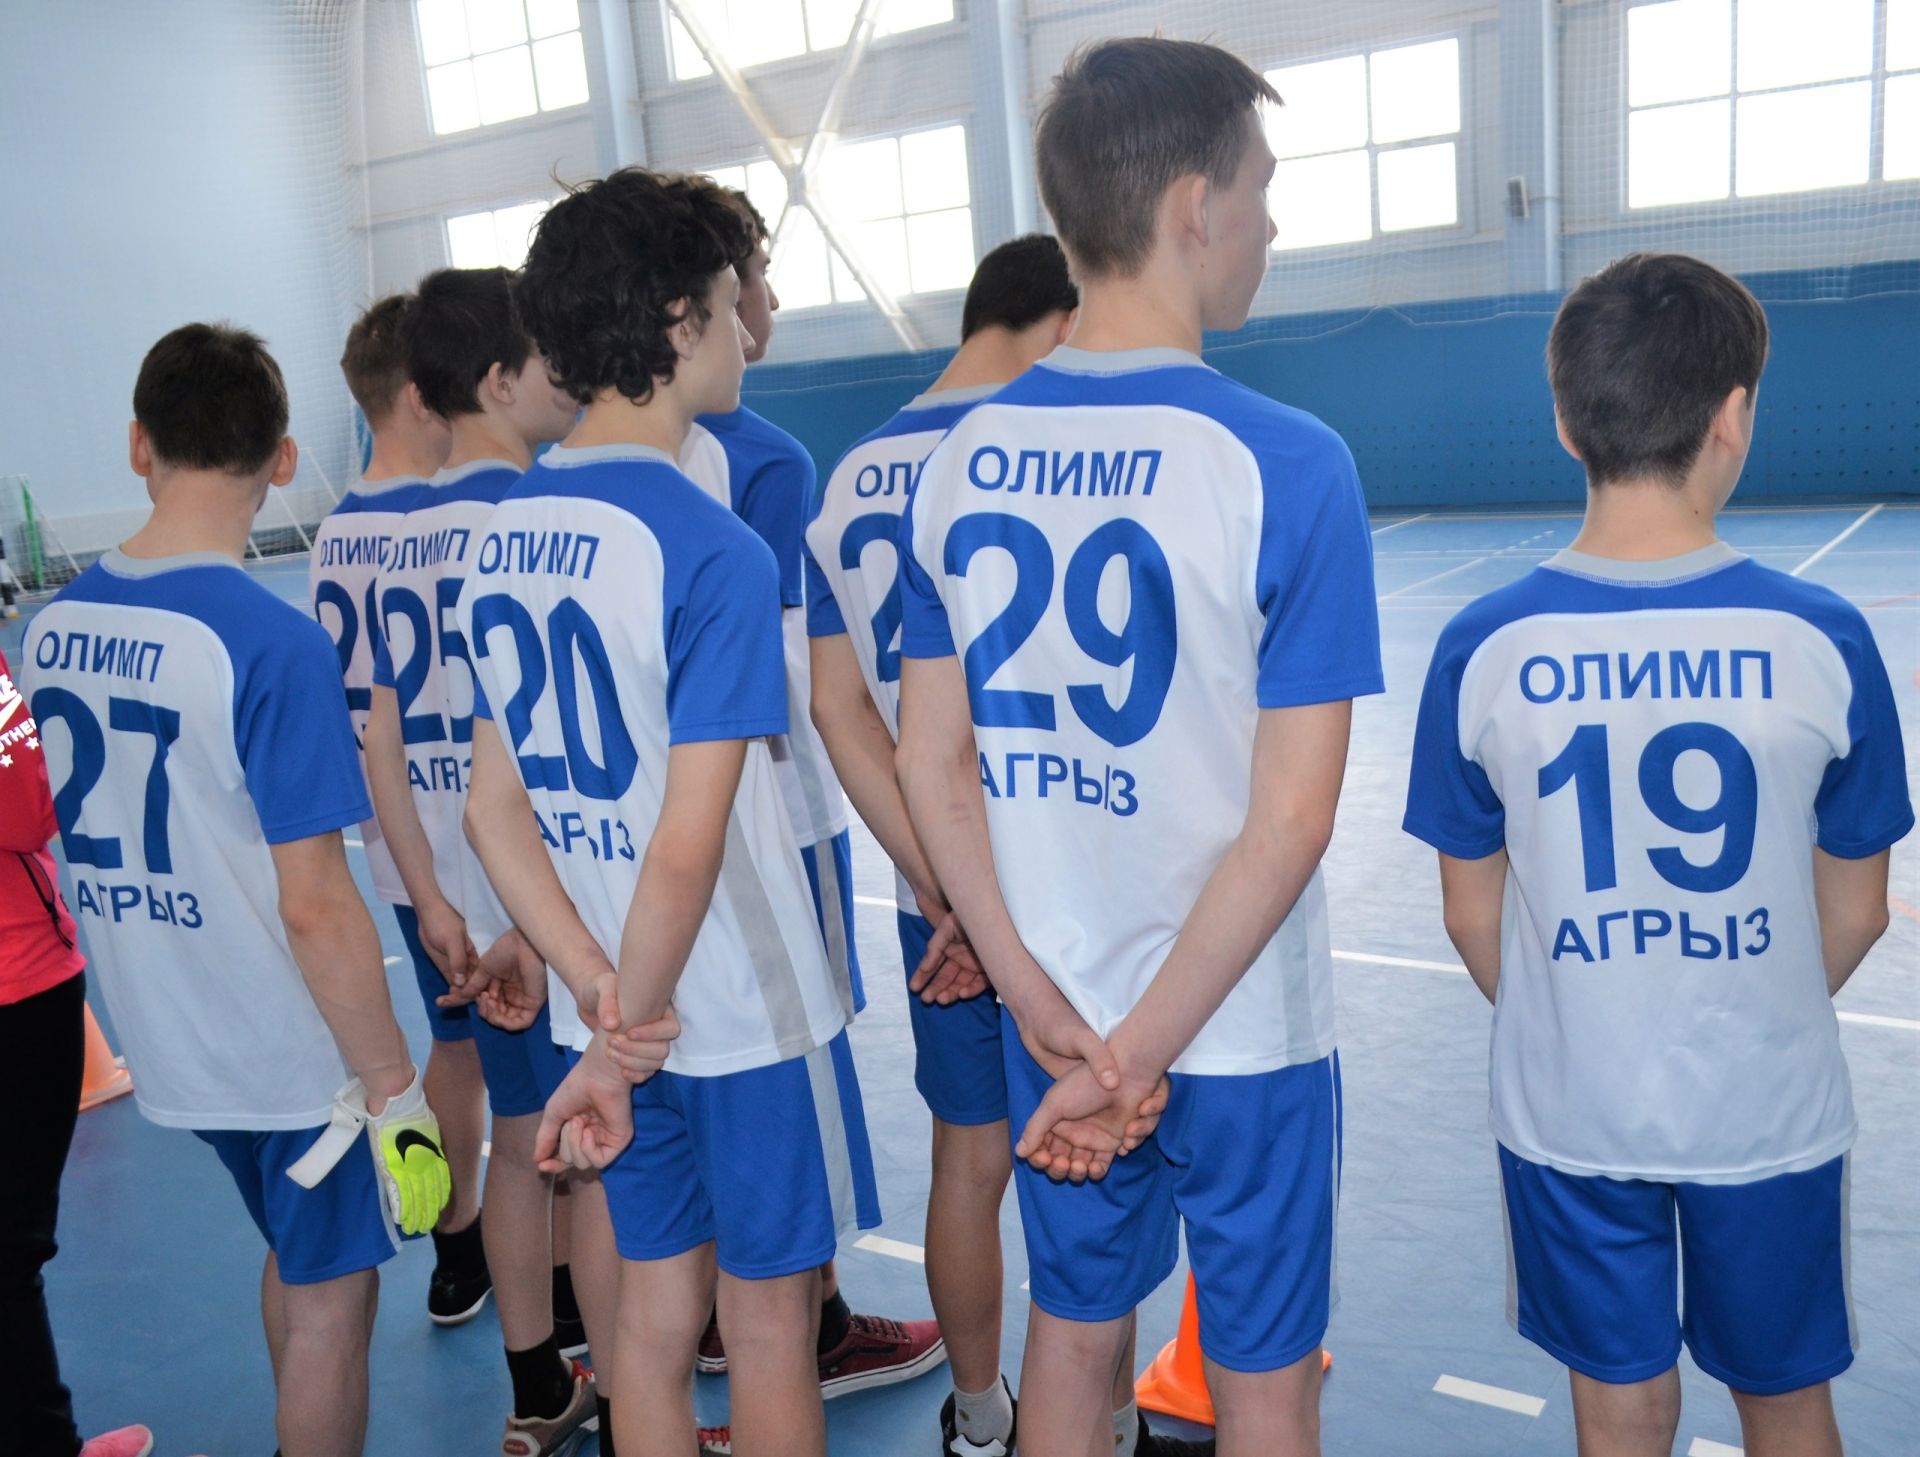 Агрызские ребята среди призеров в соревнованиях по мини-футболу